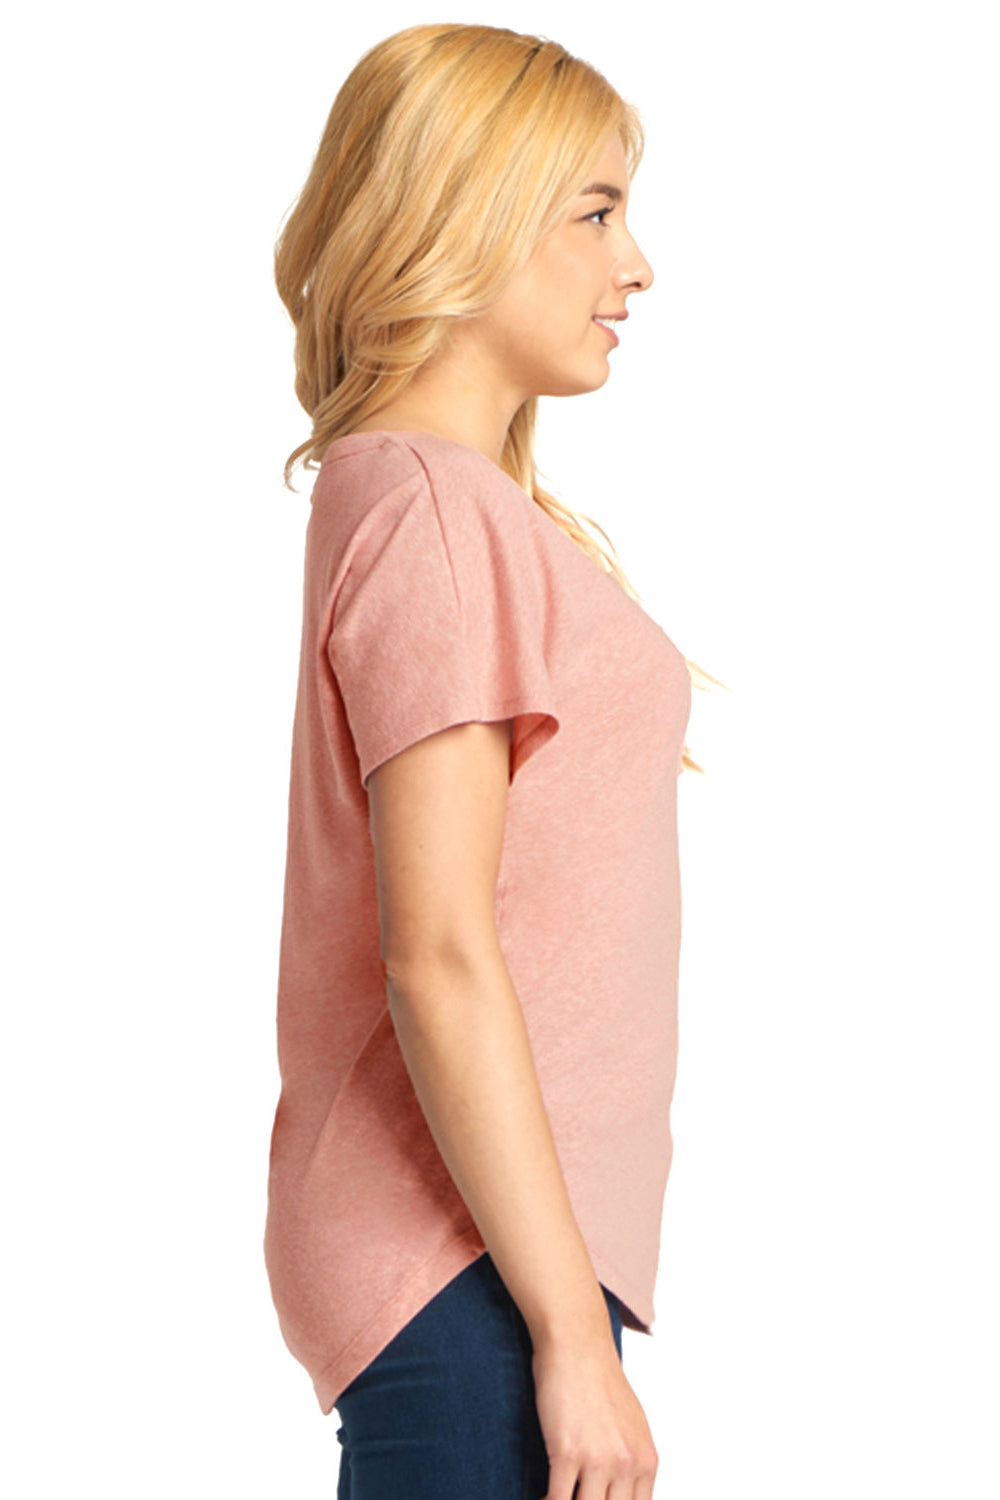 Next Level 6760 Womens Dolman Jersey Short Sleeve Scoop Neck T-Shirt Desert Pink SIde